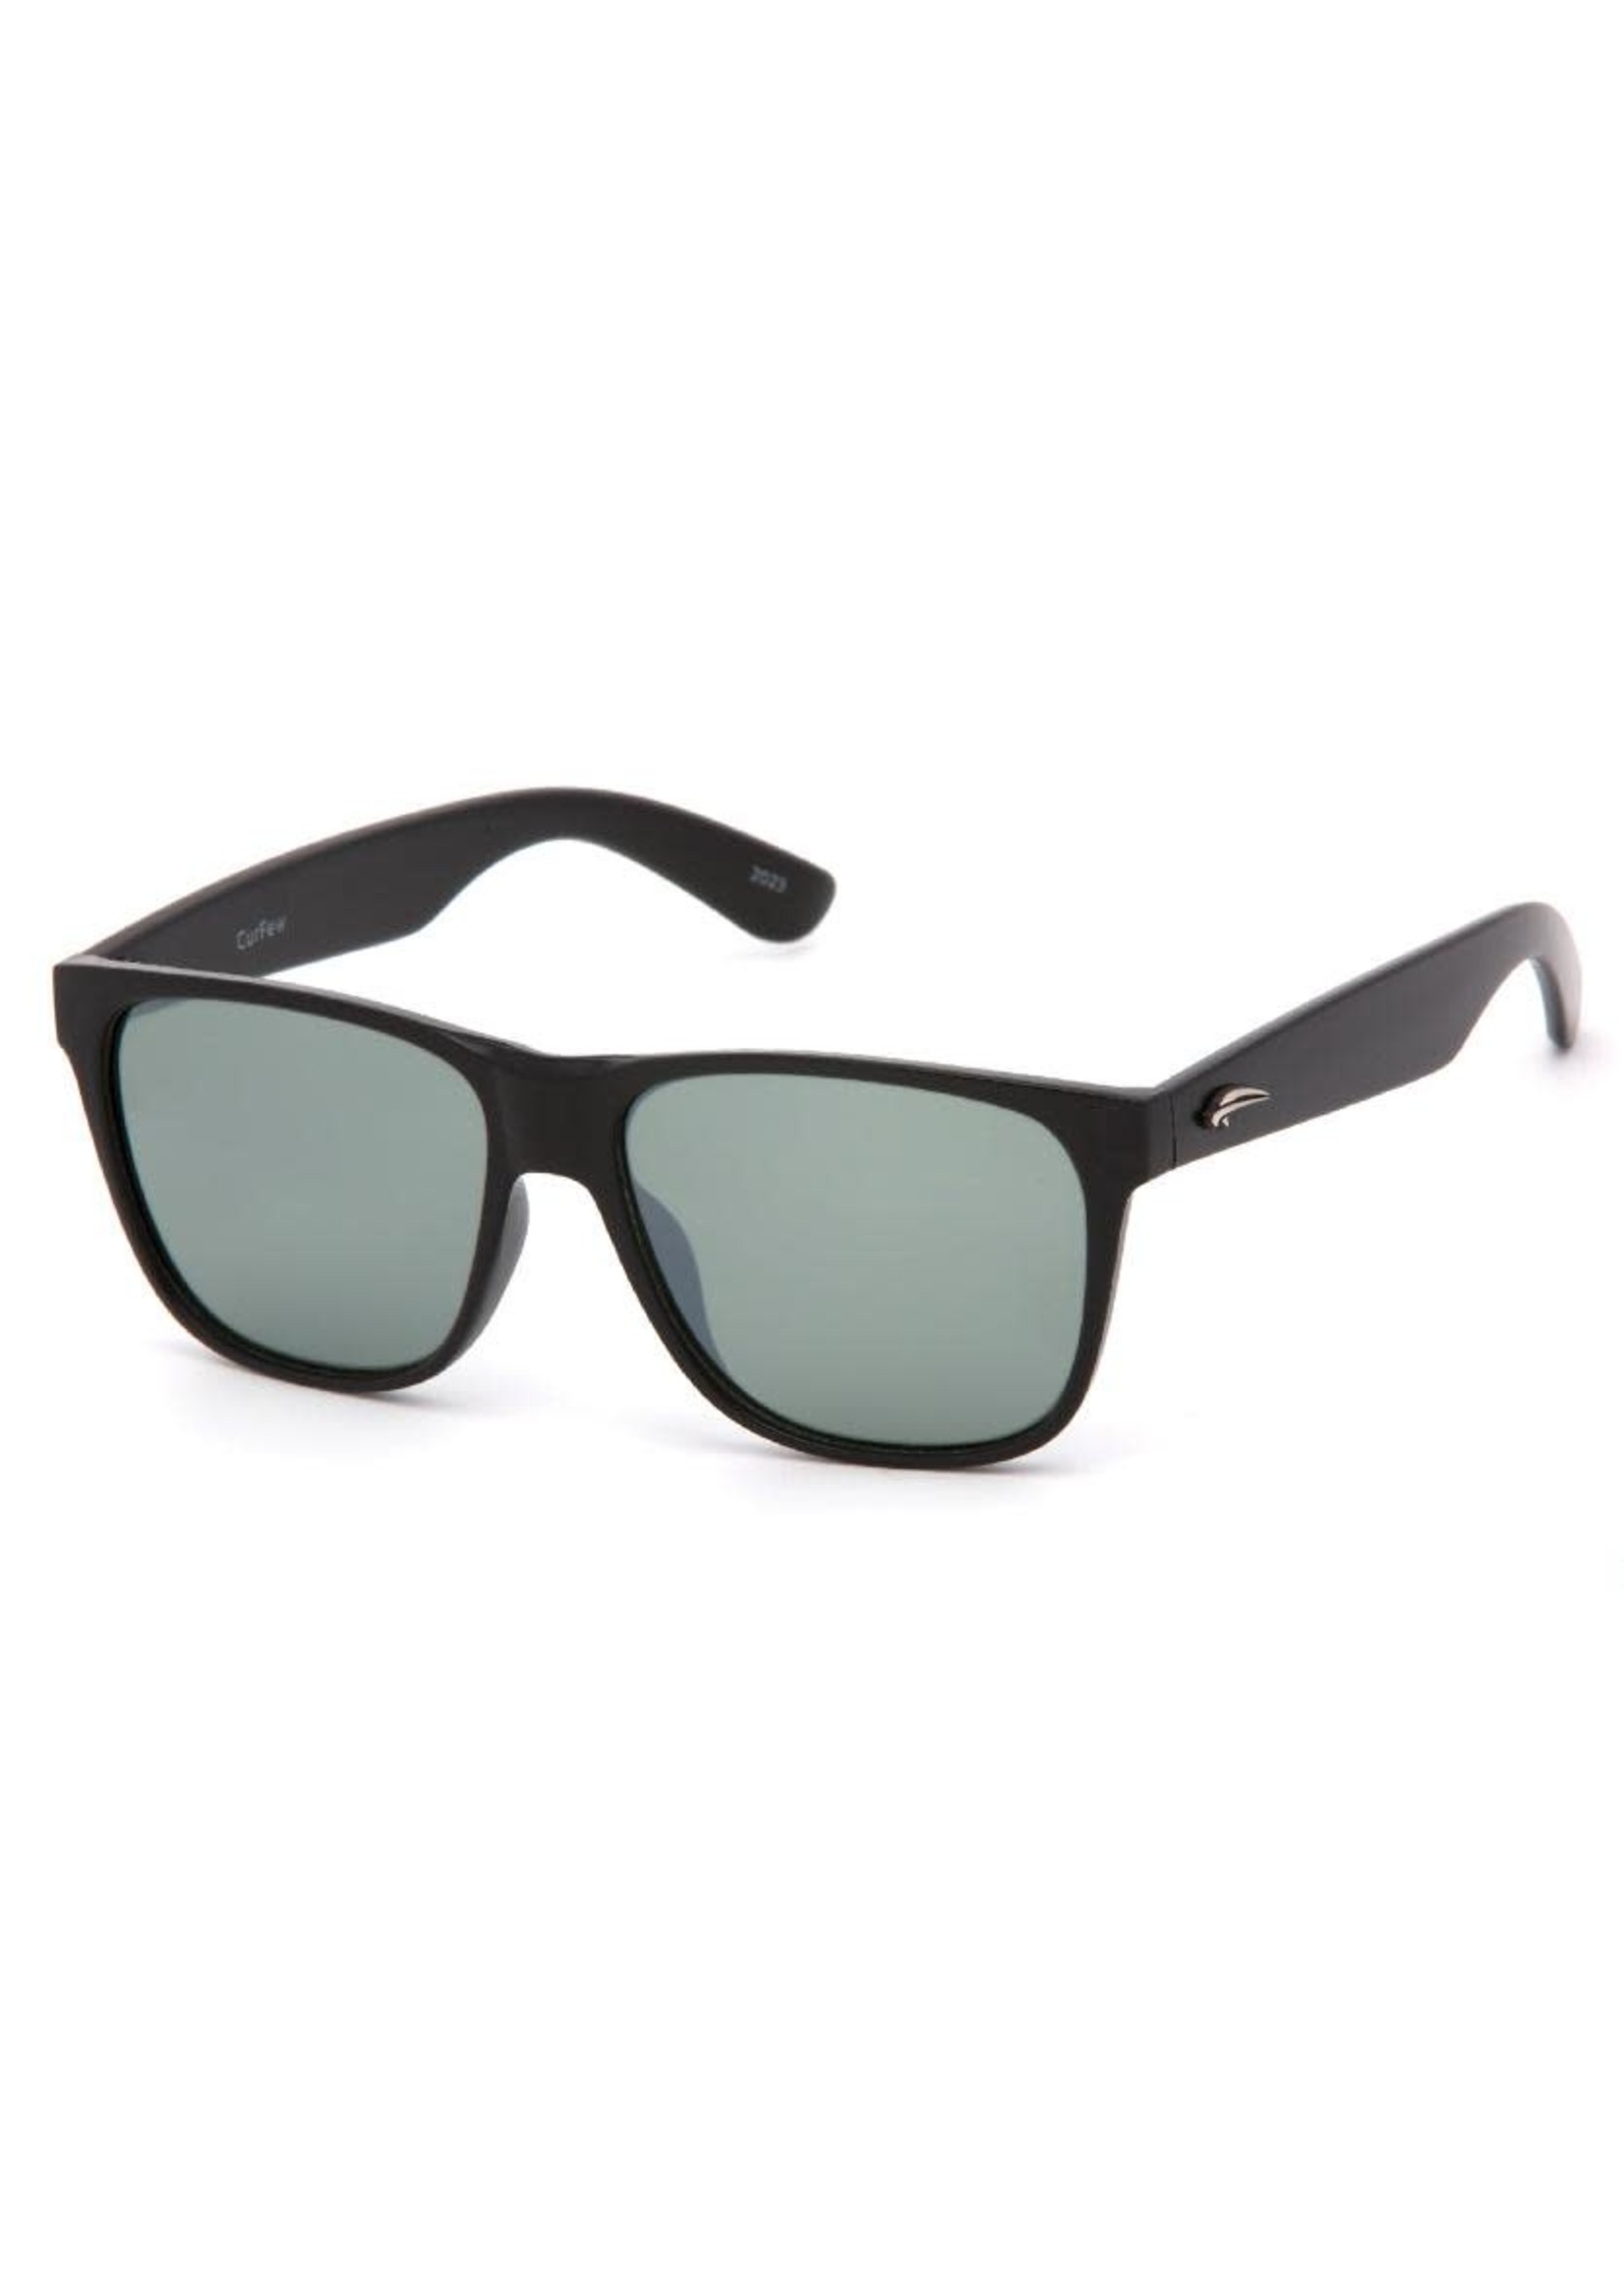 Atmosphere Premium Sport Sunglasses Men's - Pure Outdoors